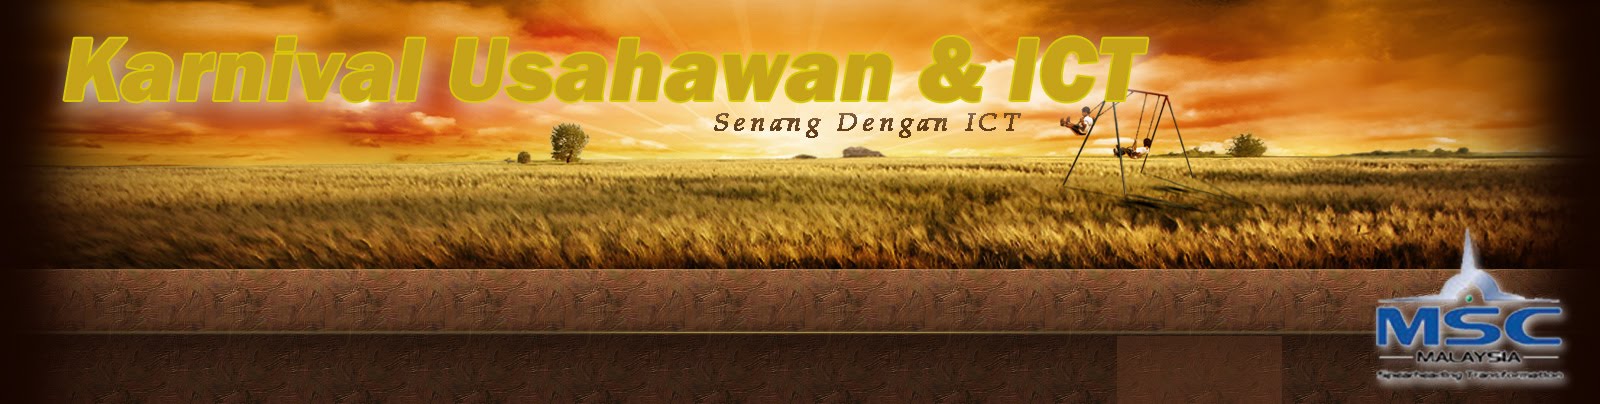 Karnival Usahawan & ICT